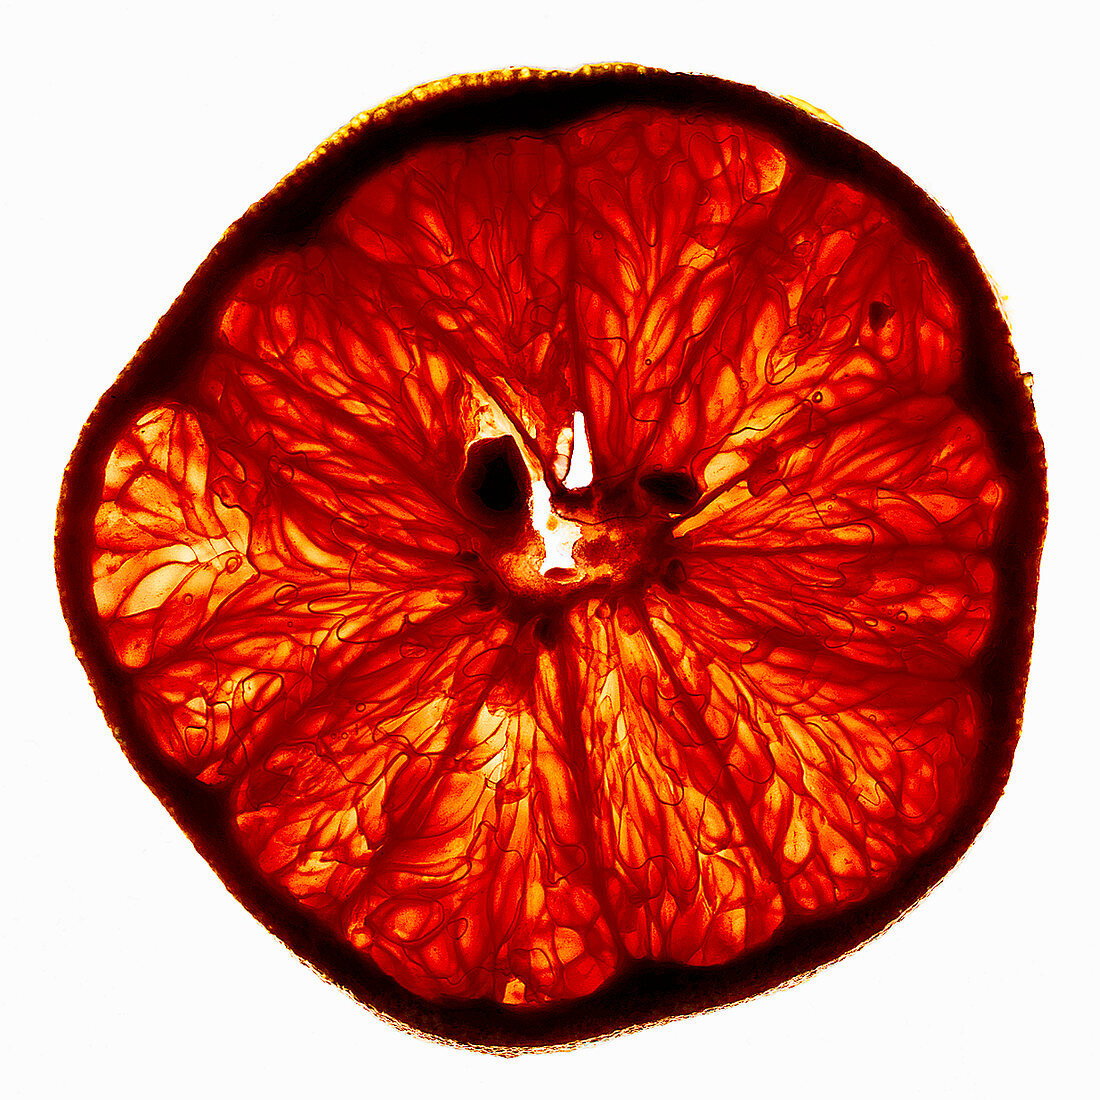 Eine Grapefruitscheibe im Durchlicht